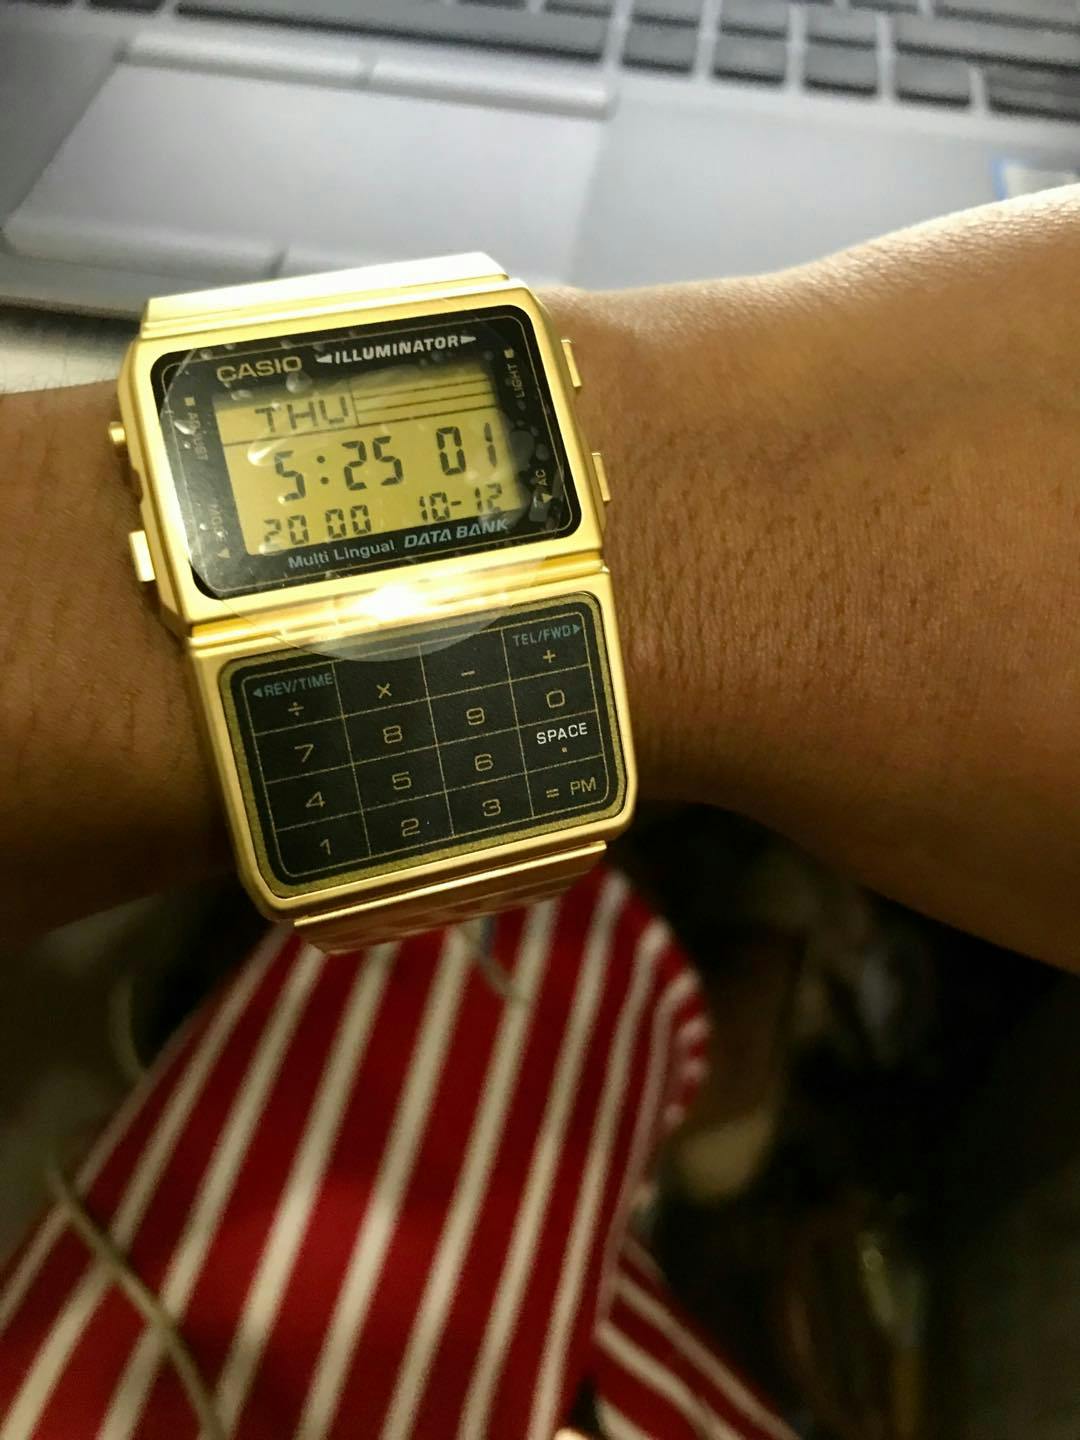 casio calculator watch gold